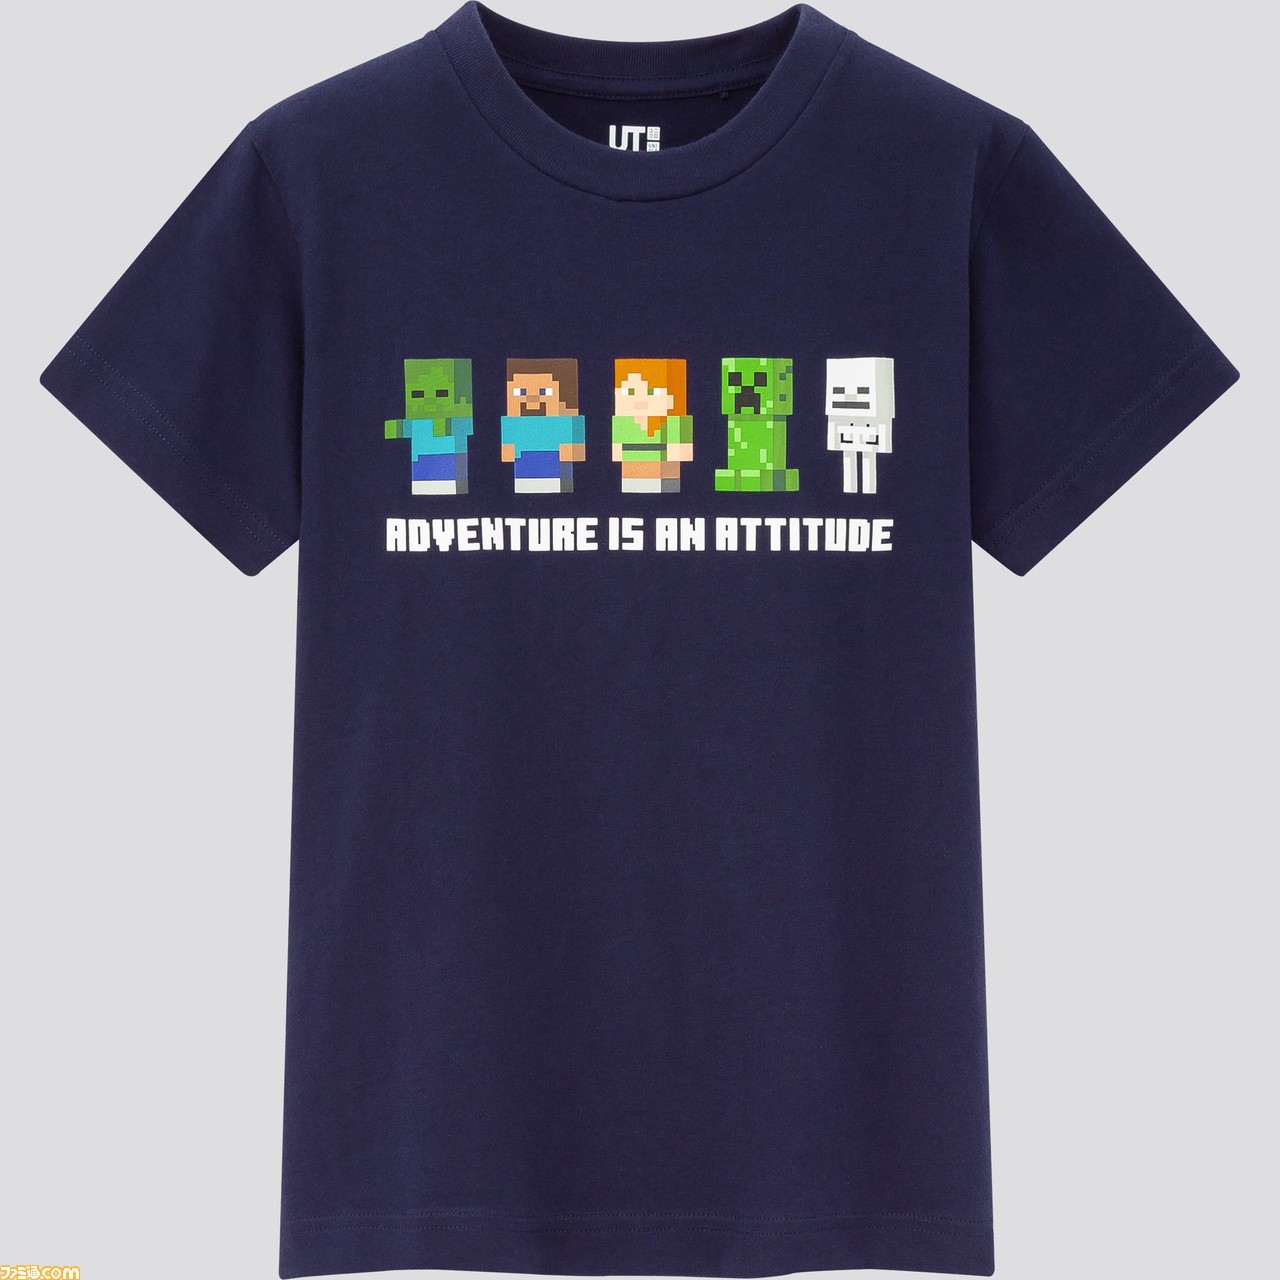 マイクラ ユニクロのコラボtシャツが3 発売 Tシャツを着たキャラクタースキンパックも無料配布 ゲーム エンタメ最新情報のファミ通 Com